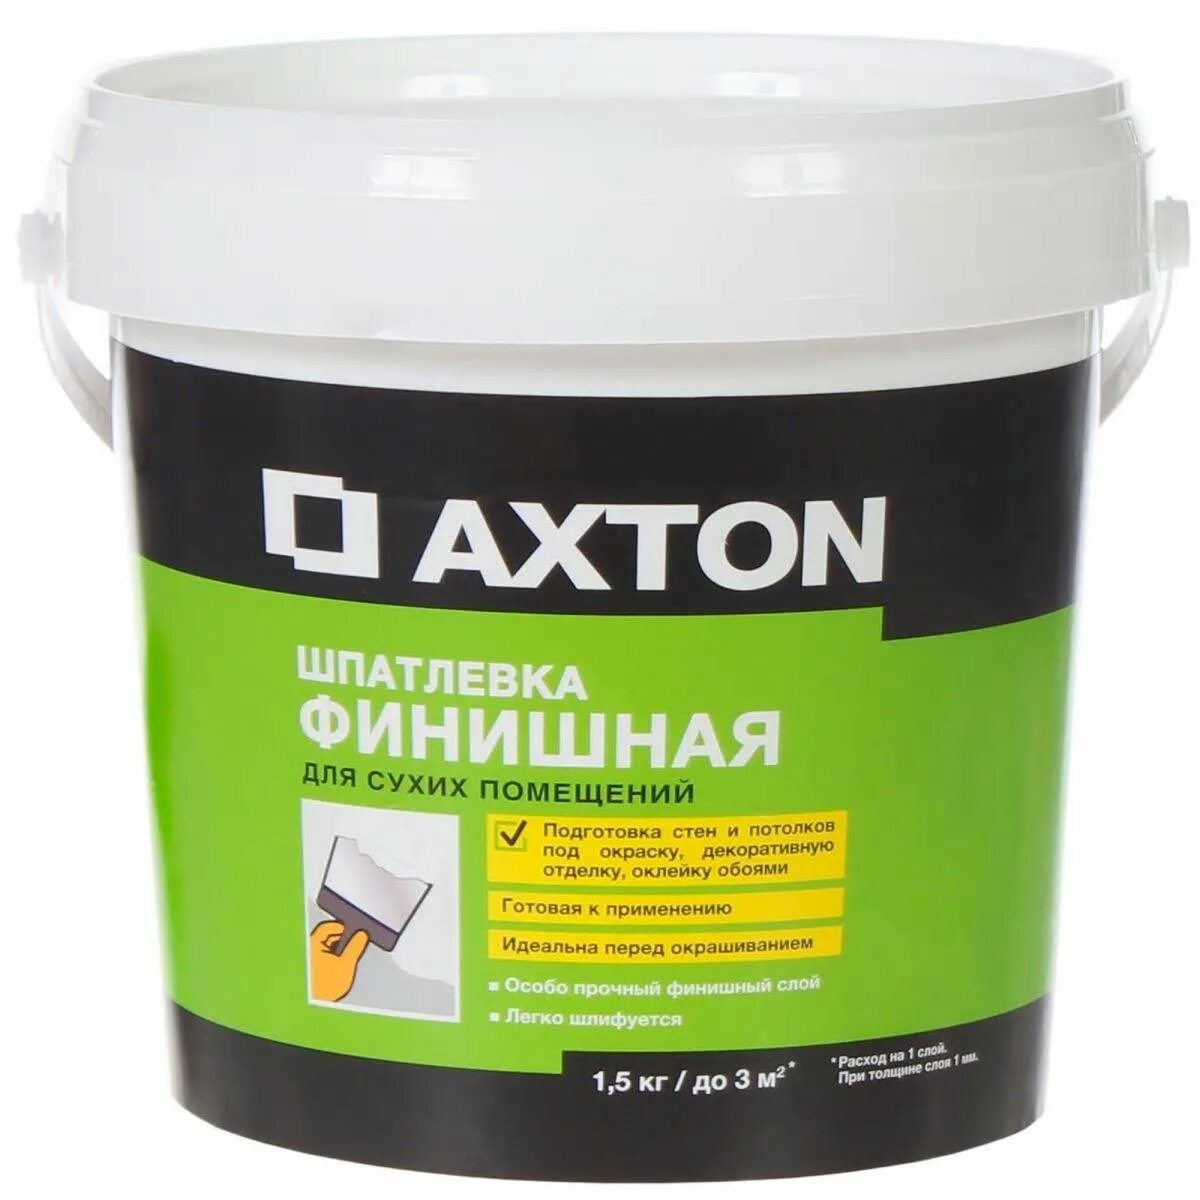 Axton шпатлёвка финишная для сухих помещений 1.5 кг. Axton шпатлевка финишная Leroy. Шпатлёвка финишная Axton для сухих помещений 5 кг. Шпатлевка Леруа Axton.